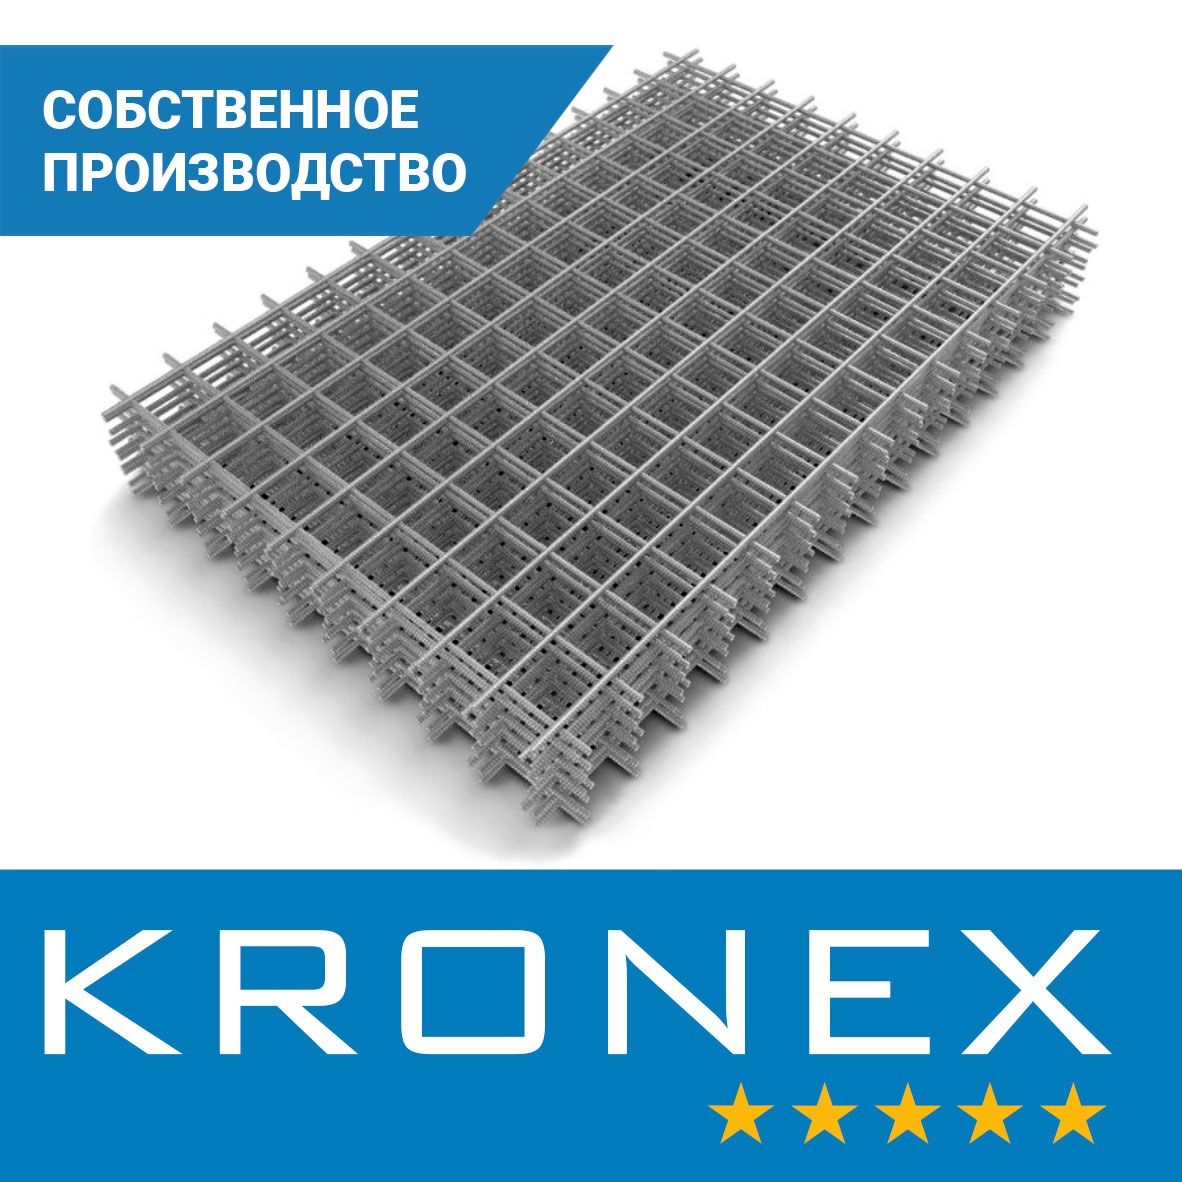 Сетка сварная KRONEX 50/50/4 (карта 2×0,25 м), исп. по ГОСТ 23279-2012, S500